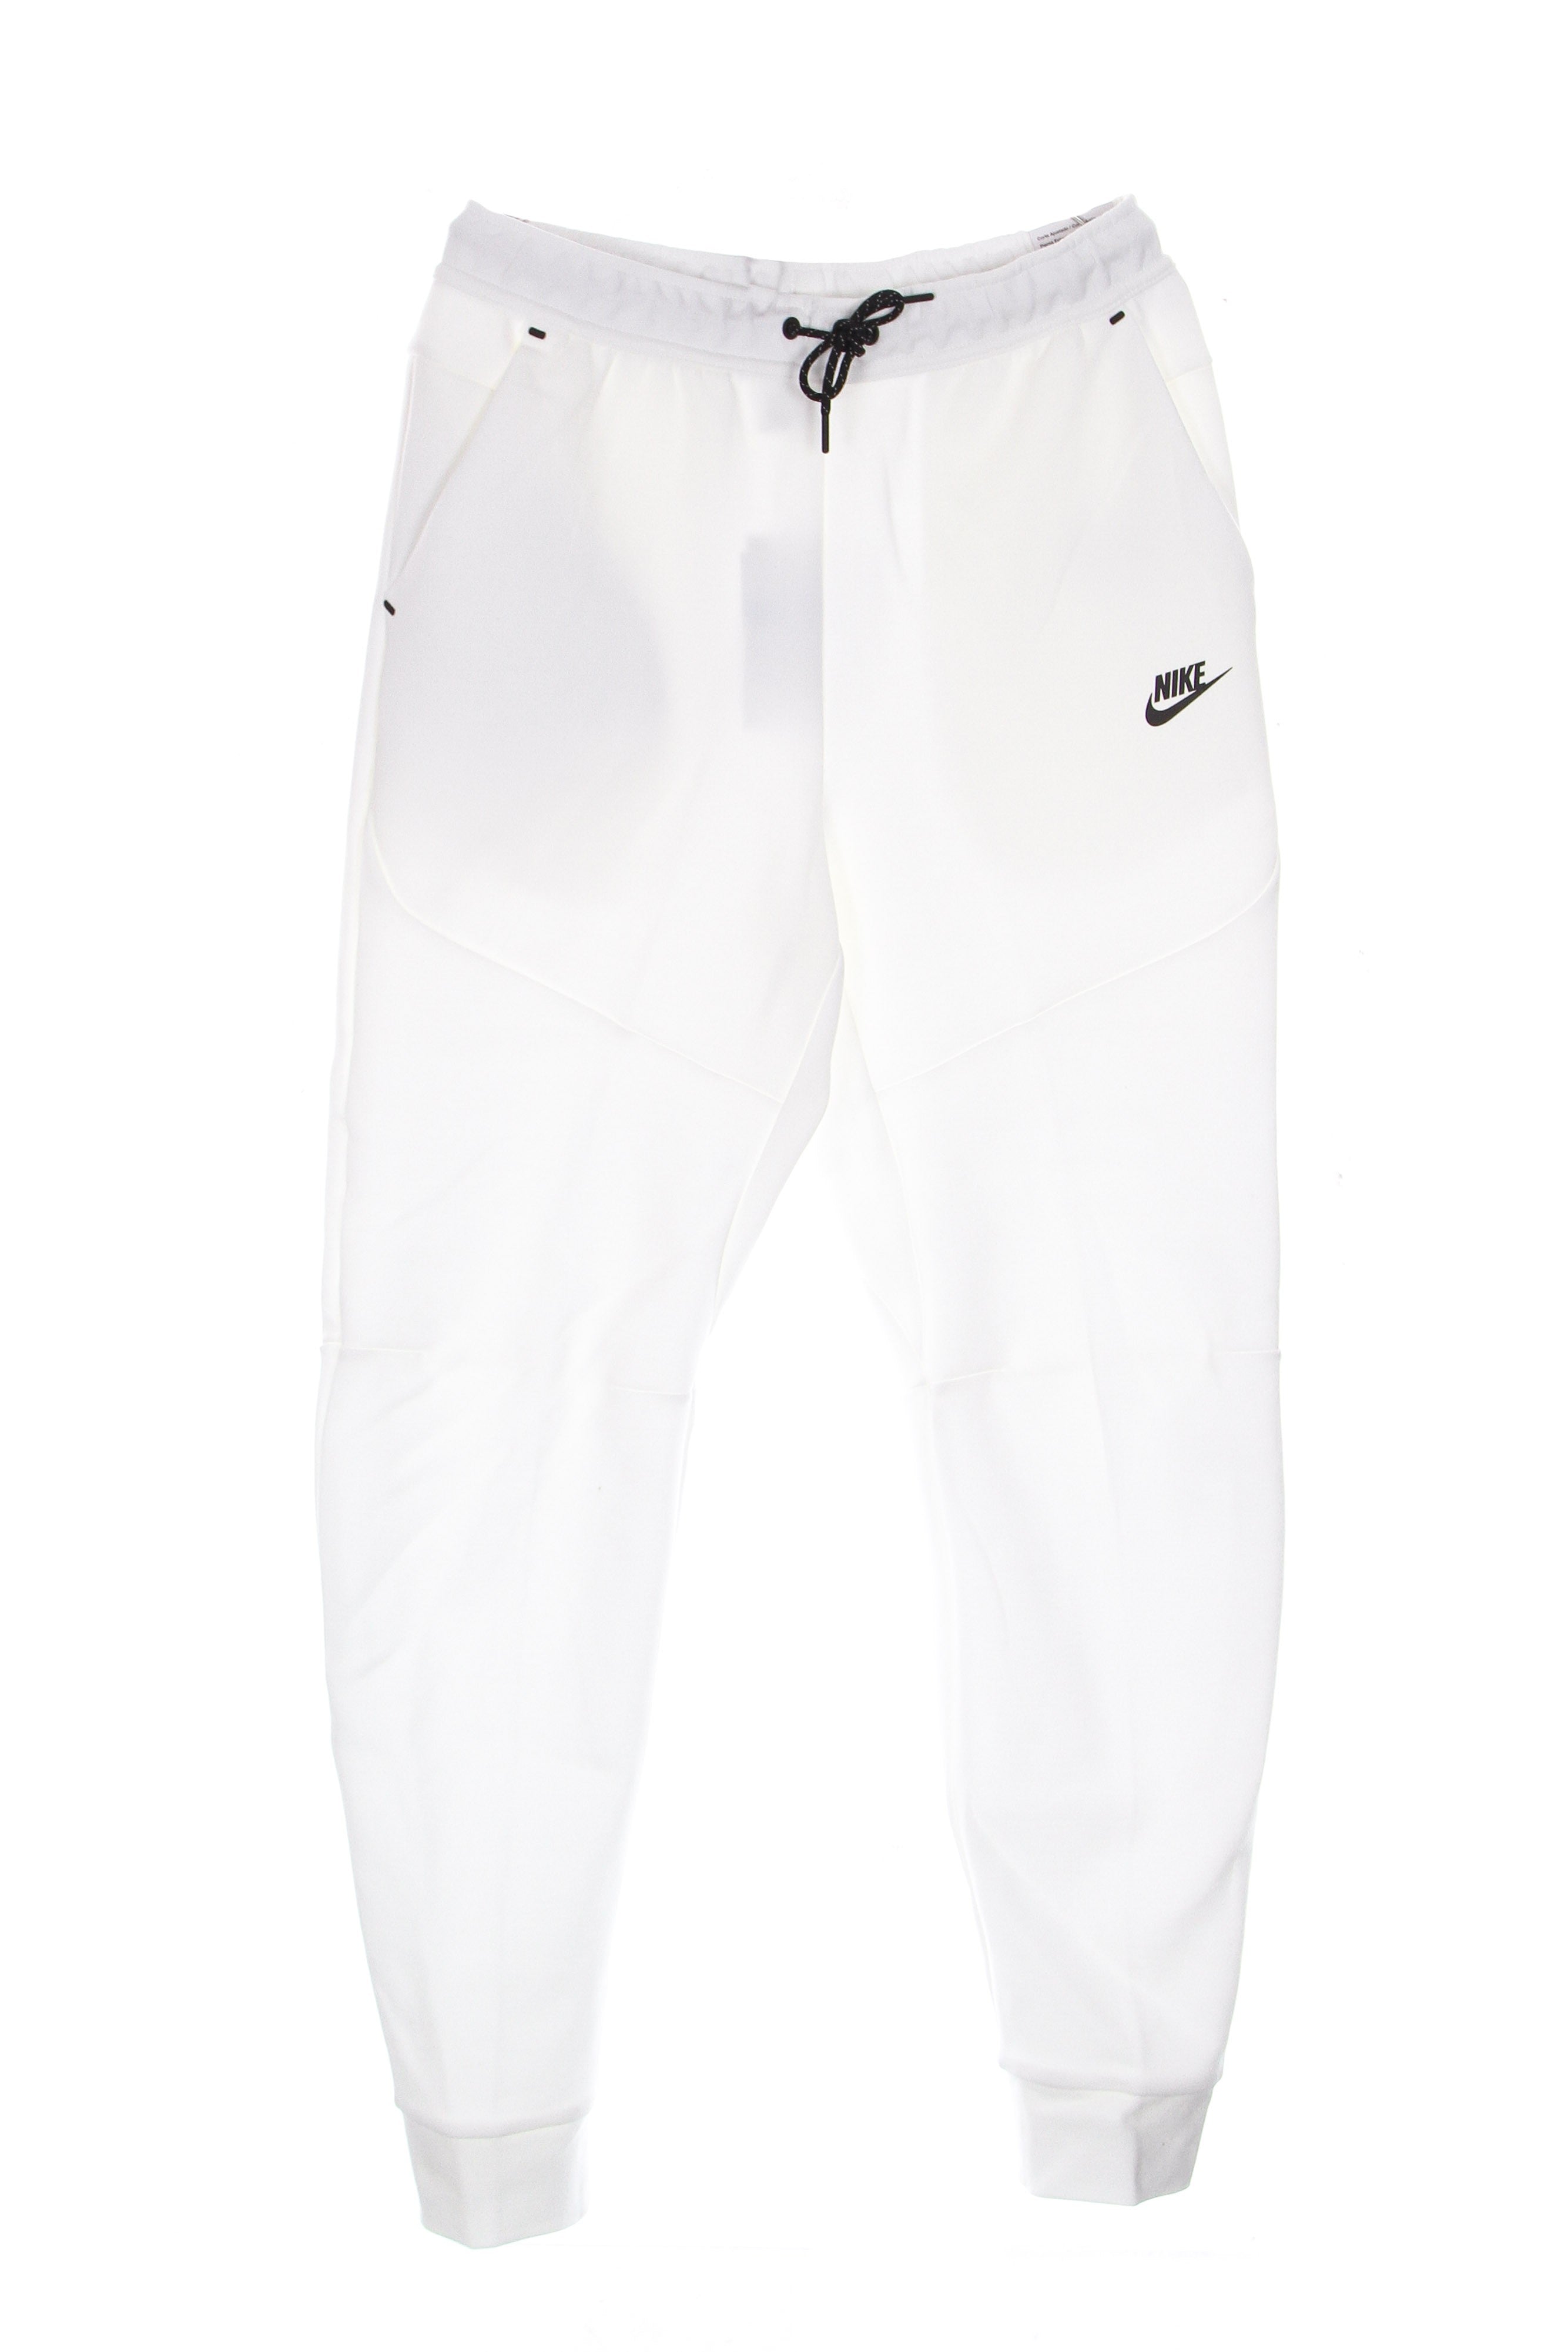 Nike, Pantalone Tuta Leggero Uomo Sportswear Tech Fleece Pant, White/black